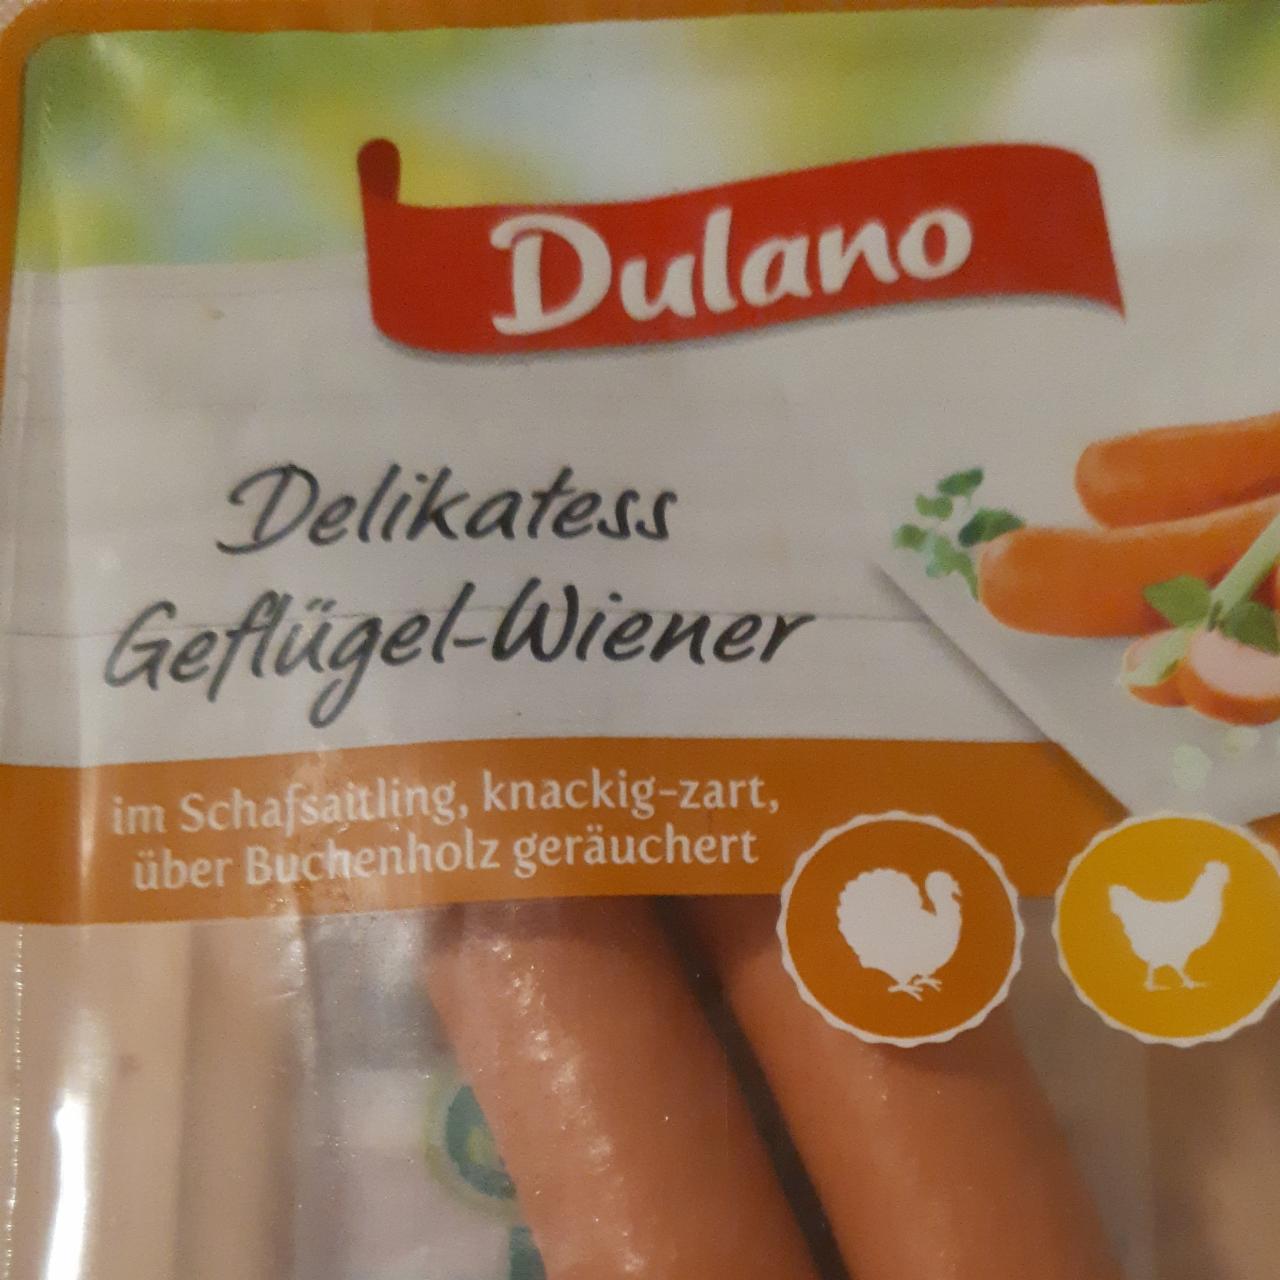 Zdjęcia - Delikatess Geflügel Wiener Dulano